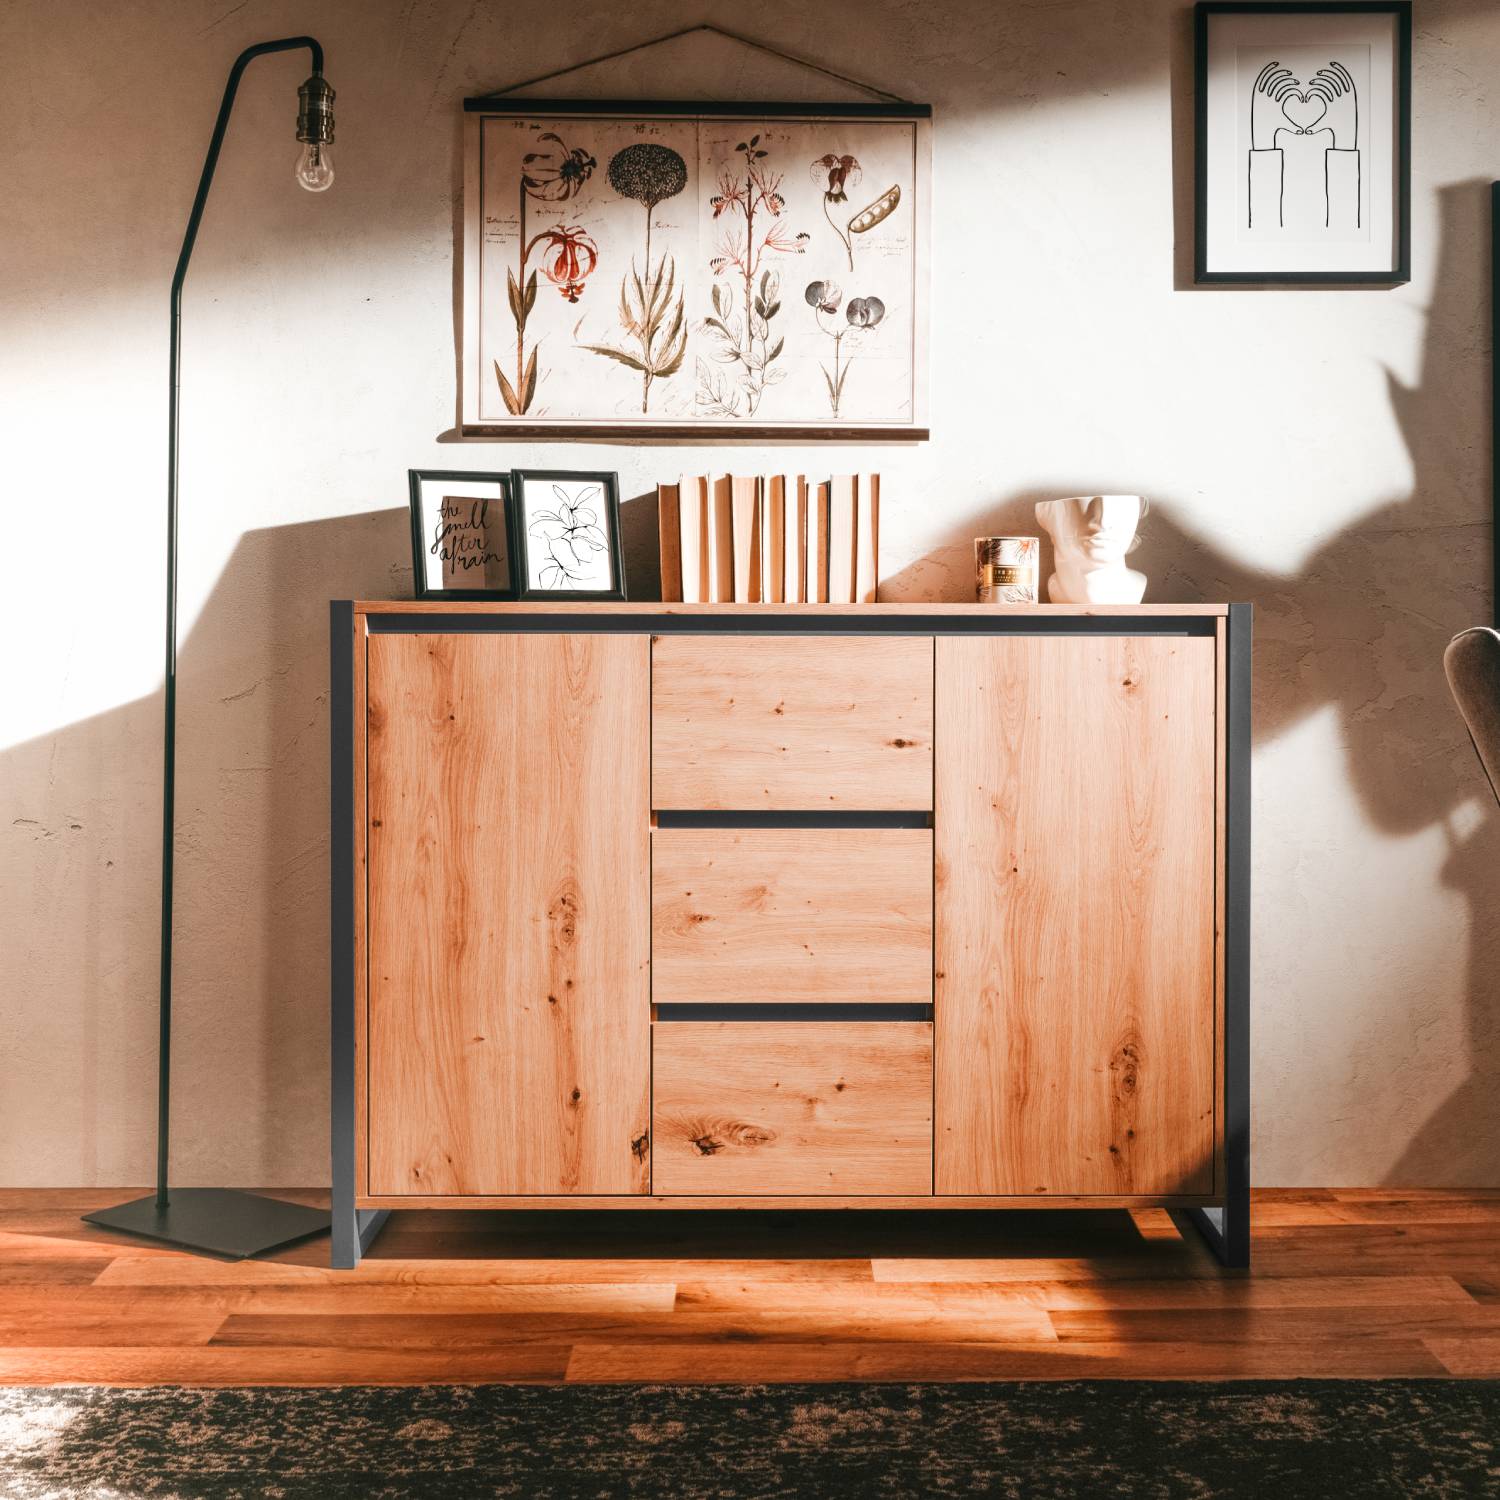 Kommode Sideboard Anrichte Schrank mit Schubladen Wohnzimmerschrank Beistellschrank Holz Industrial Look